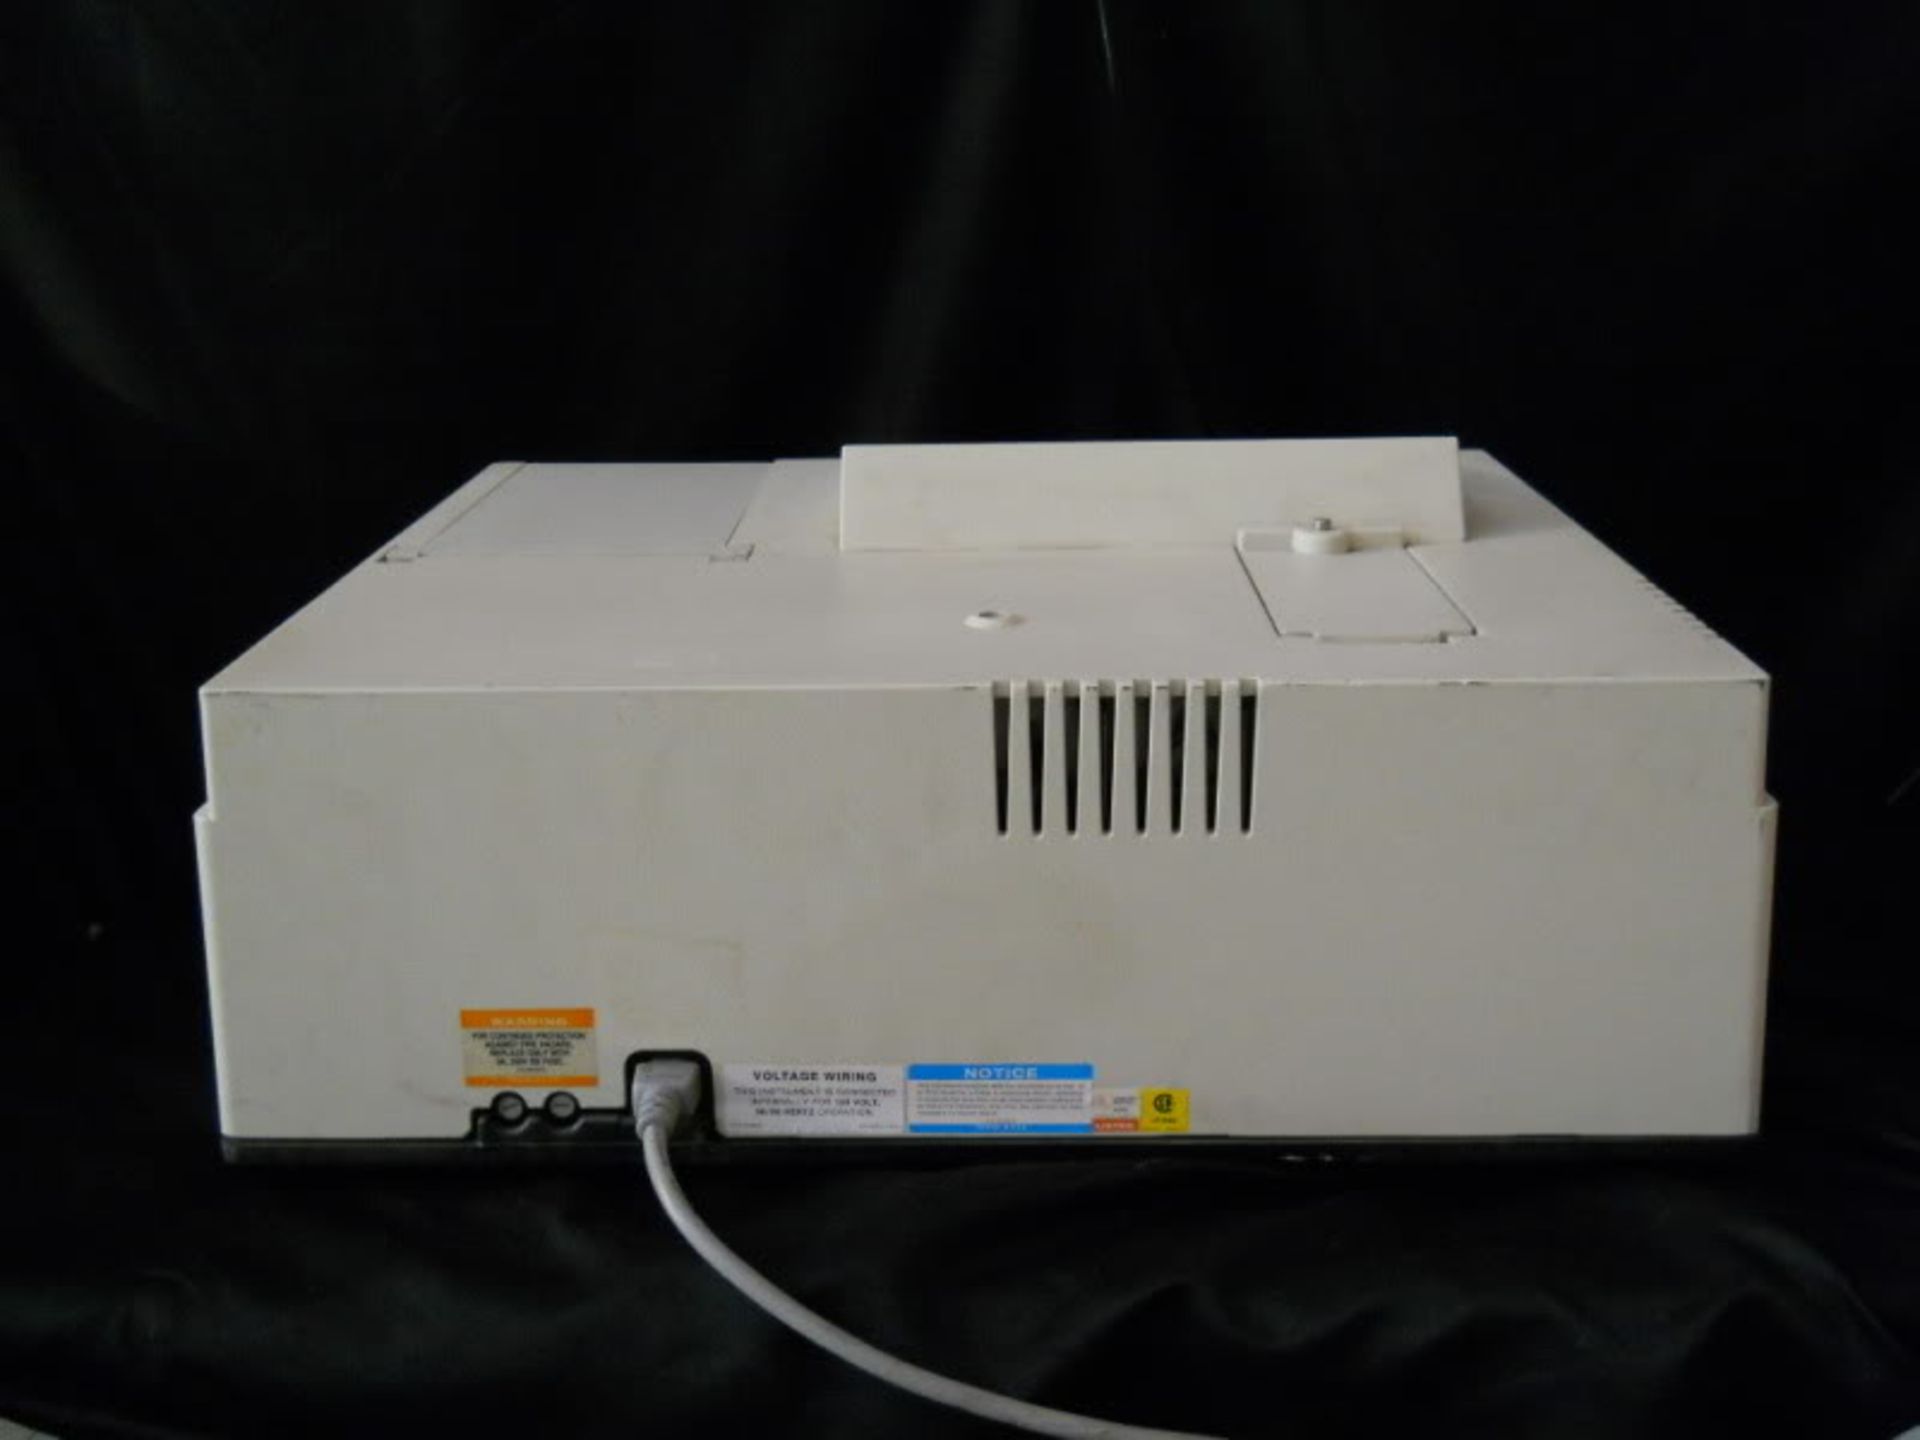 Beckman DU-62 Spectrophotometer, Qty 1, 320923927591 - Image 8 of 10